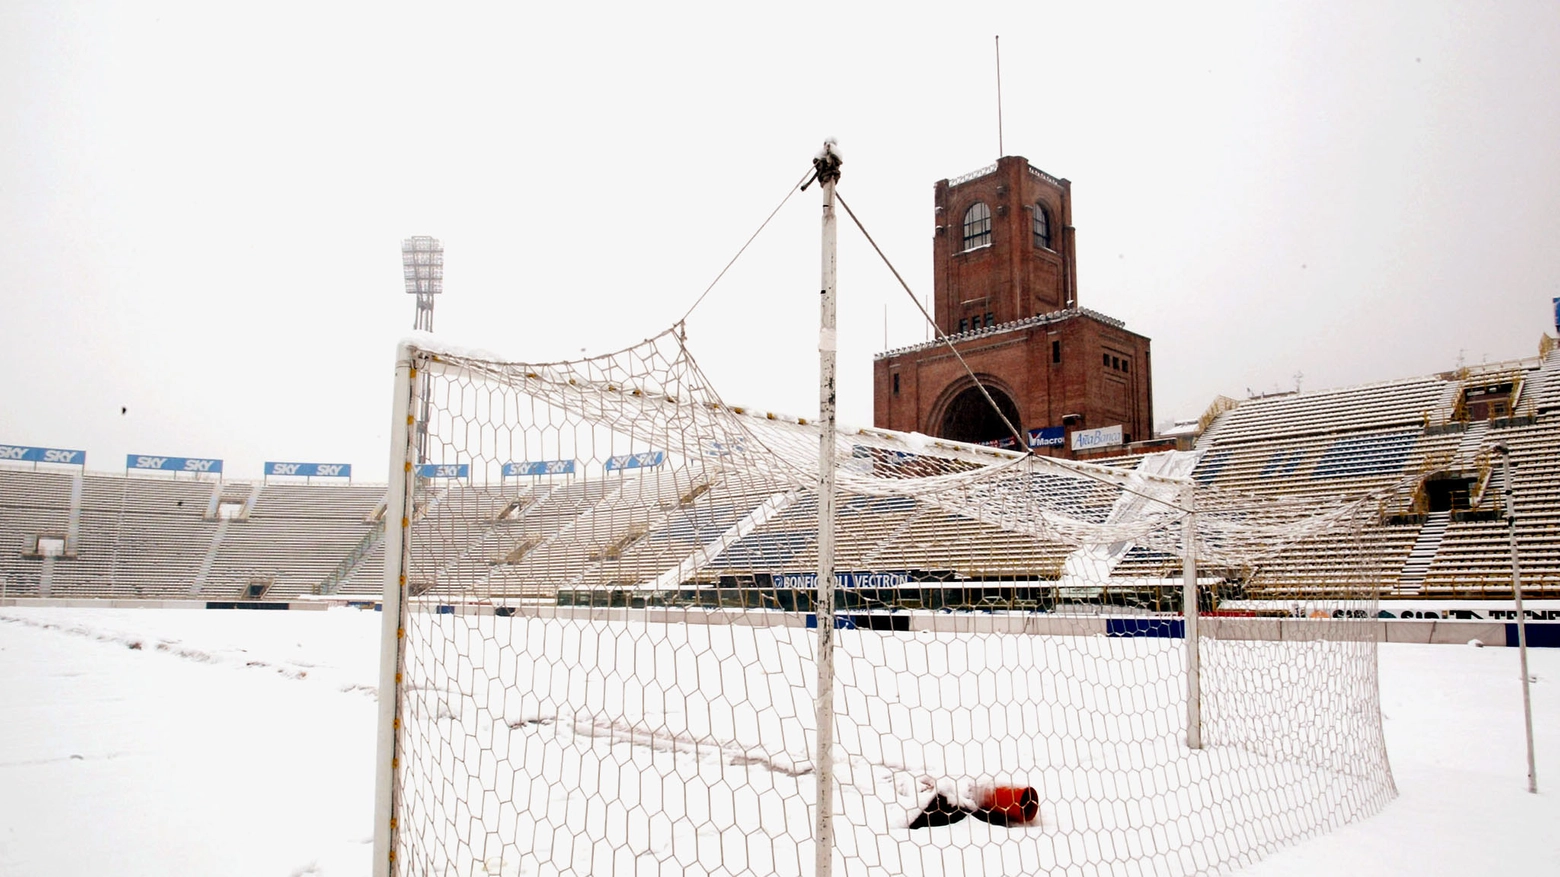 Campo di calcio coperto di neve (foto archivio Ansa)